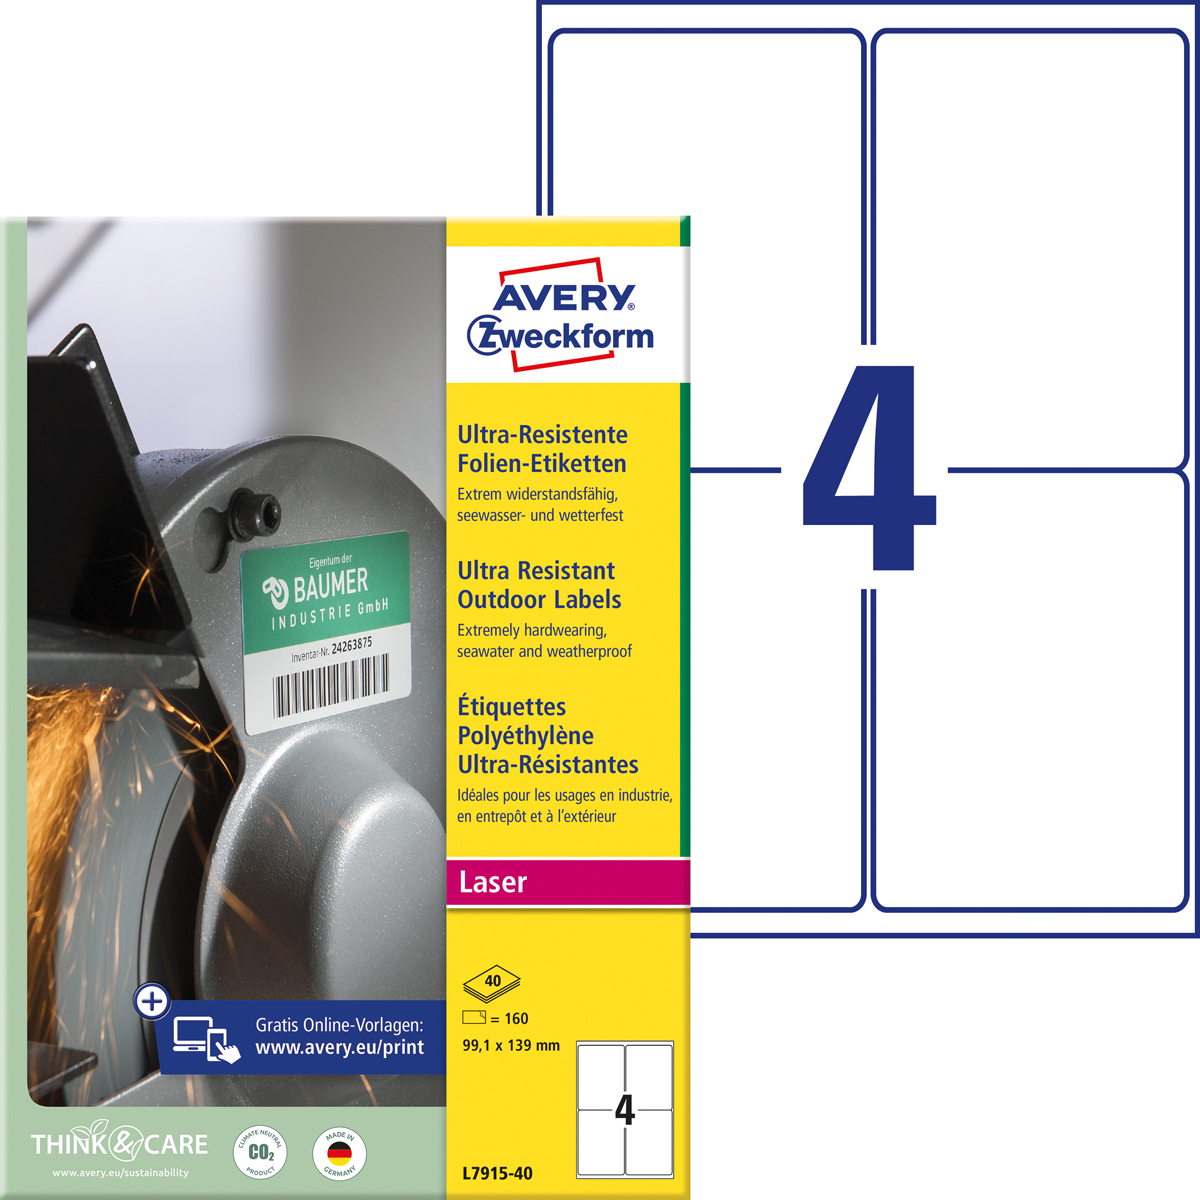 Avery Zweckform L7915-40 Ultra-Resistente, Folien-Etiketten, 99,1 x 139 mm, 40 Bogen/160